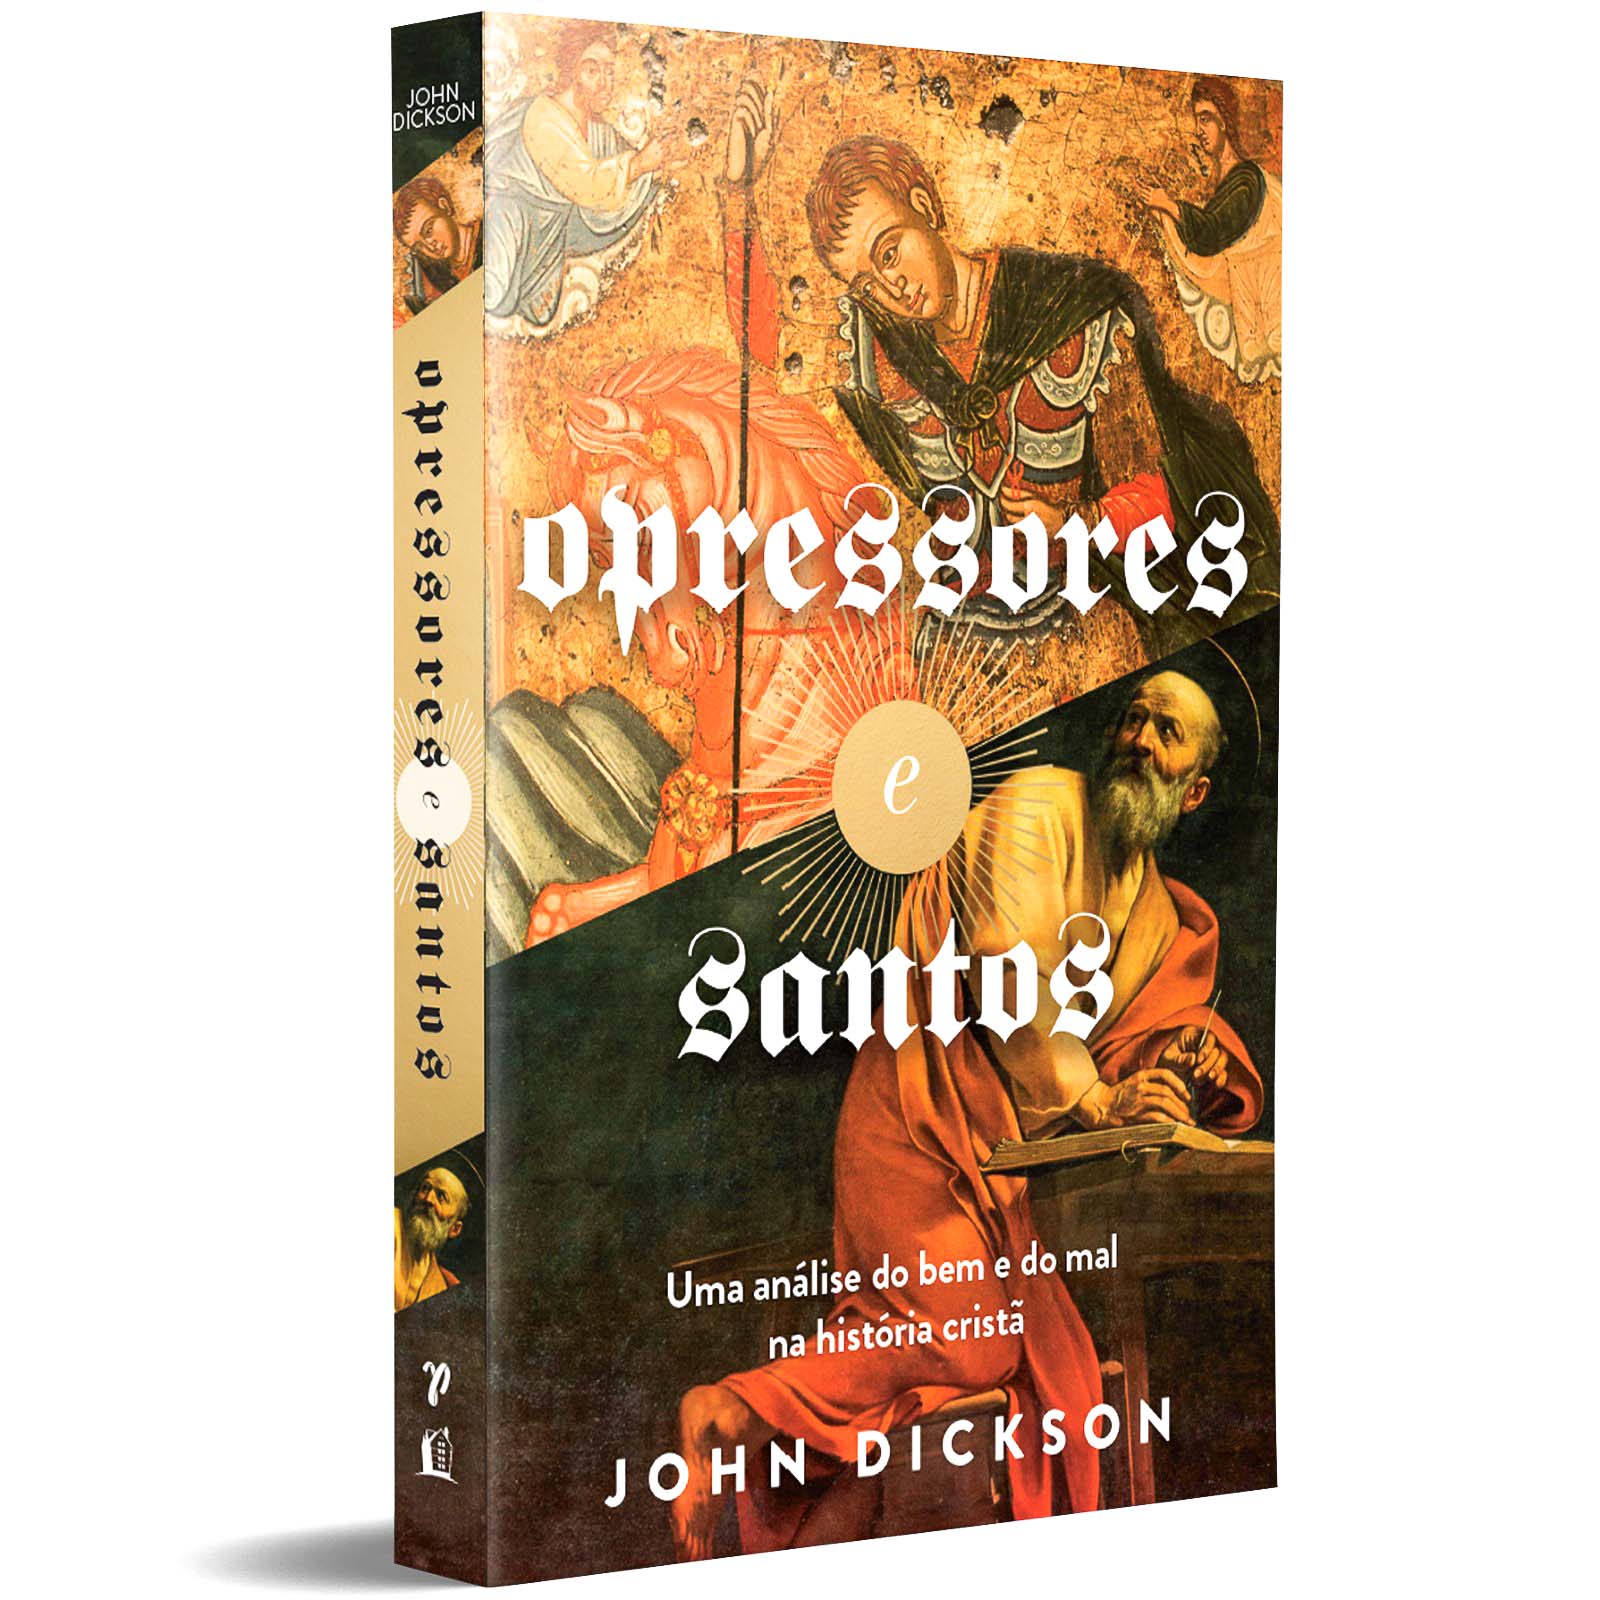 Opressores e Santos - John Dickson